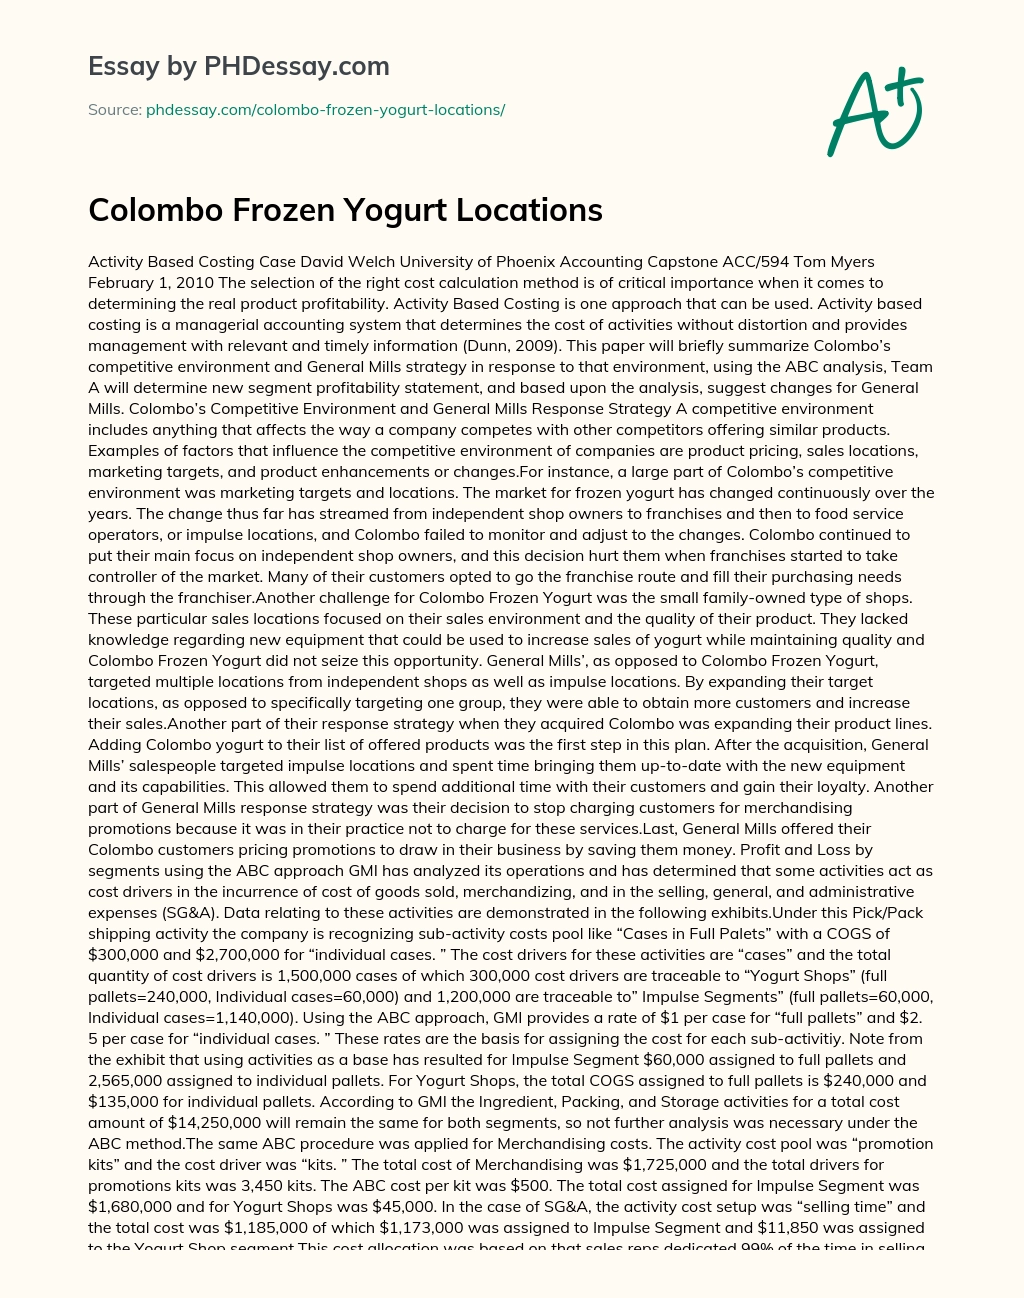 Colombo Frozen Yogurt Locations essay